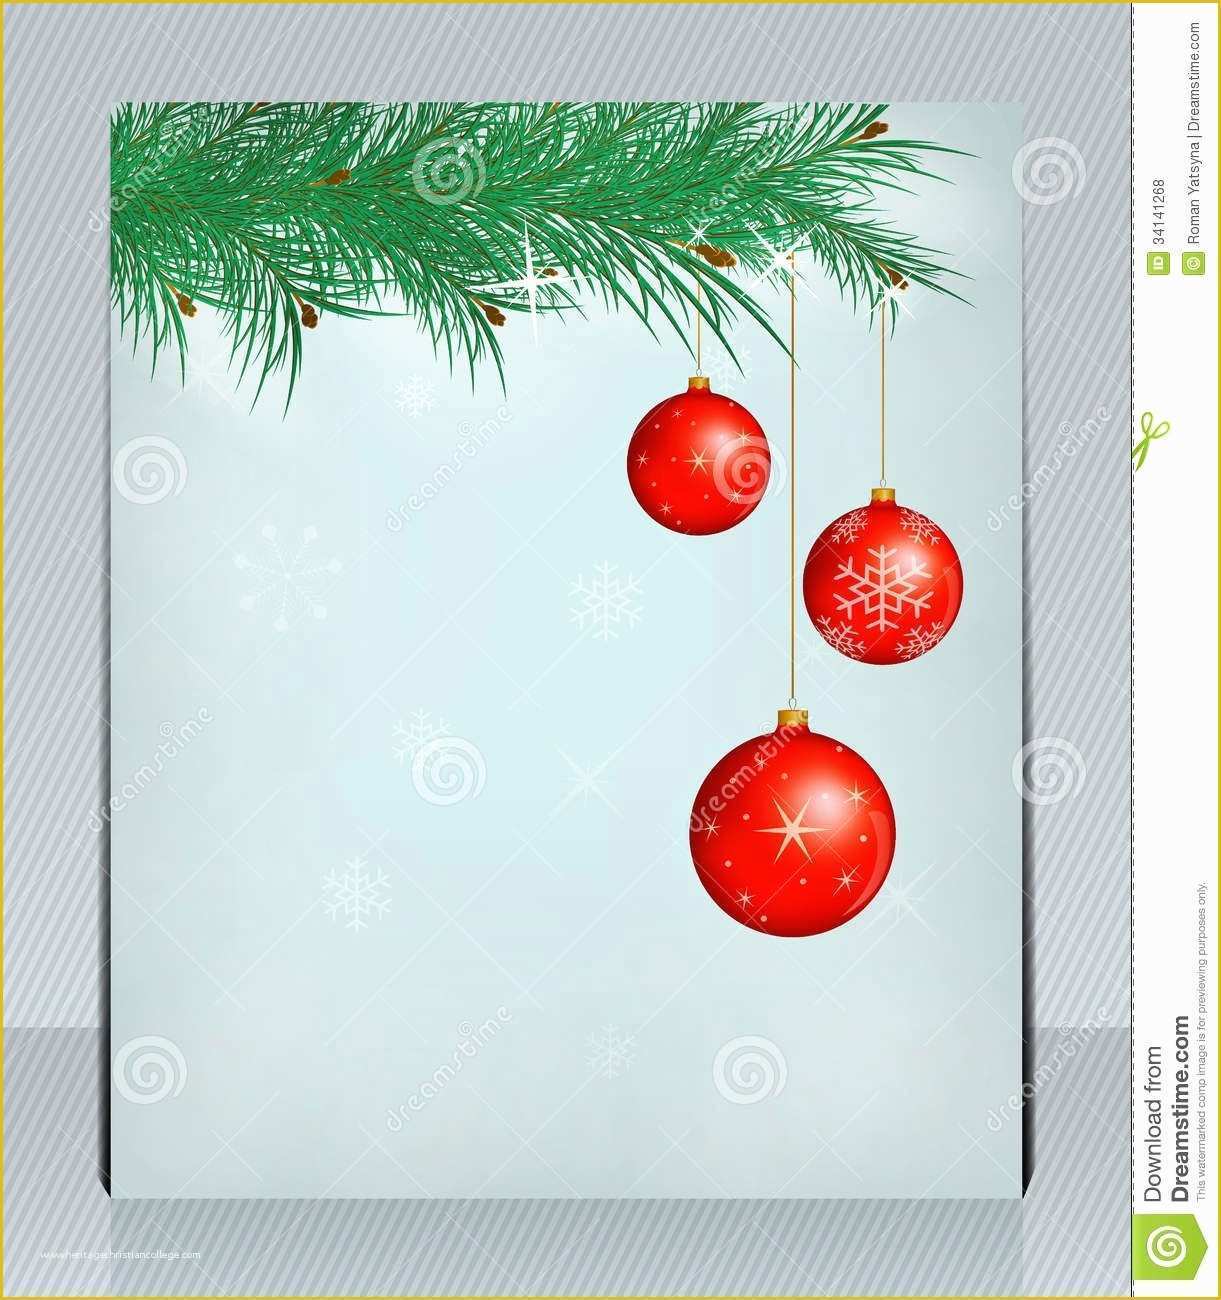 Free Printable Christmas Flyers Templates Of Blank Christmas Flyer Template